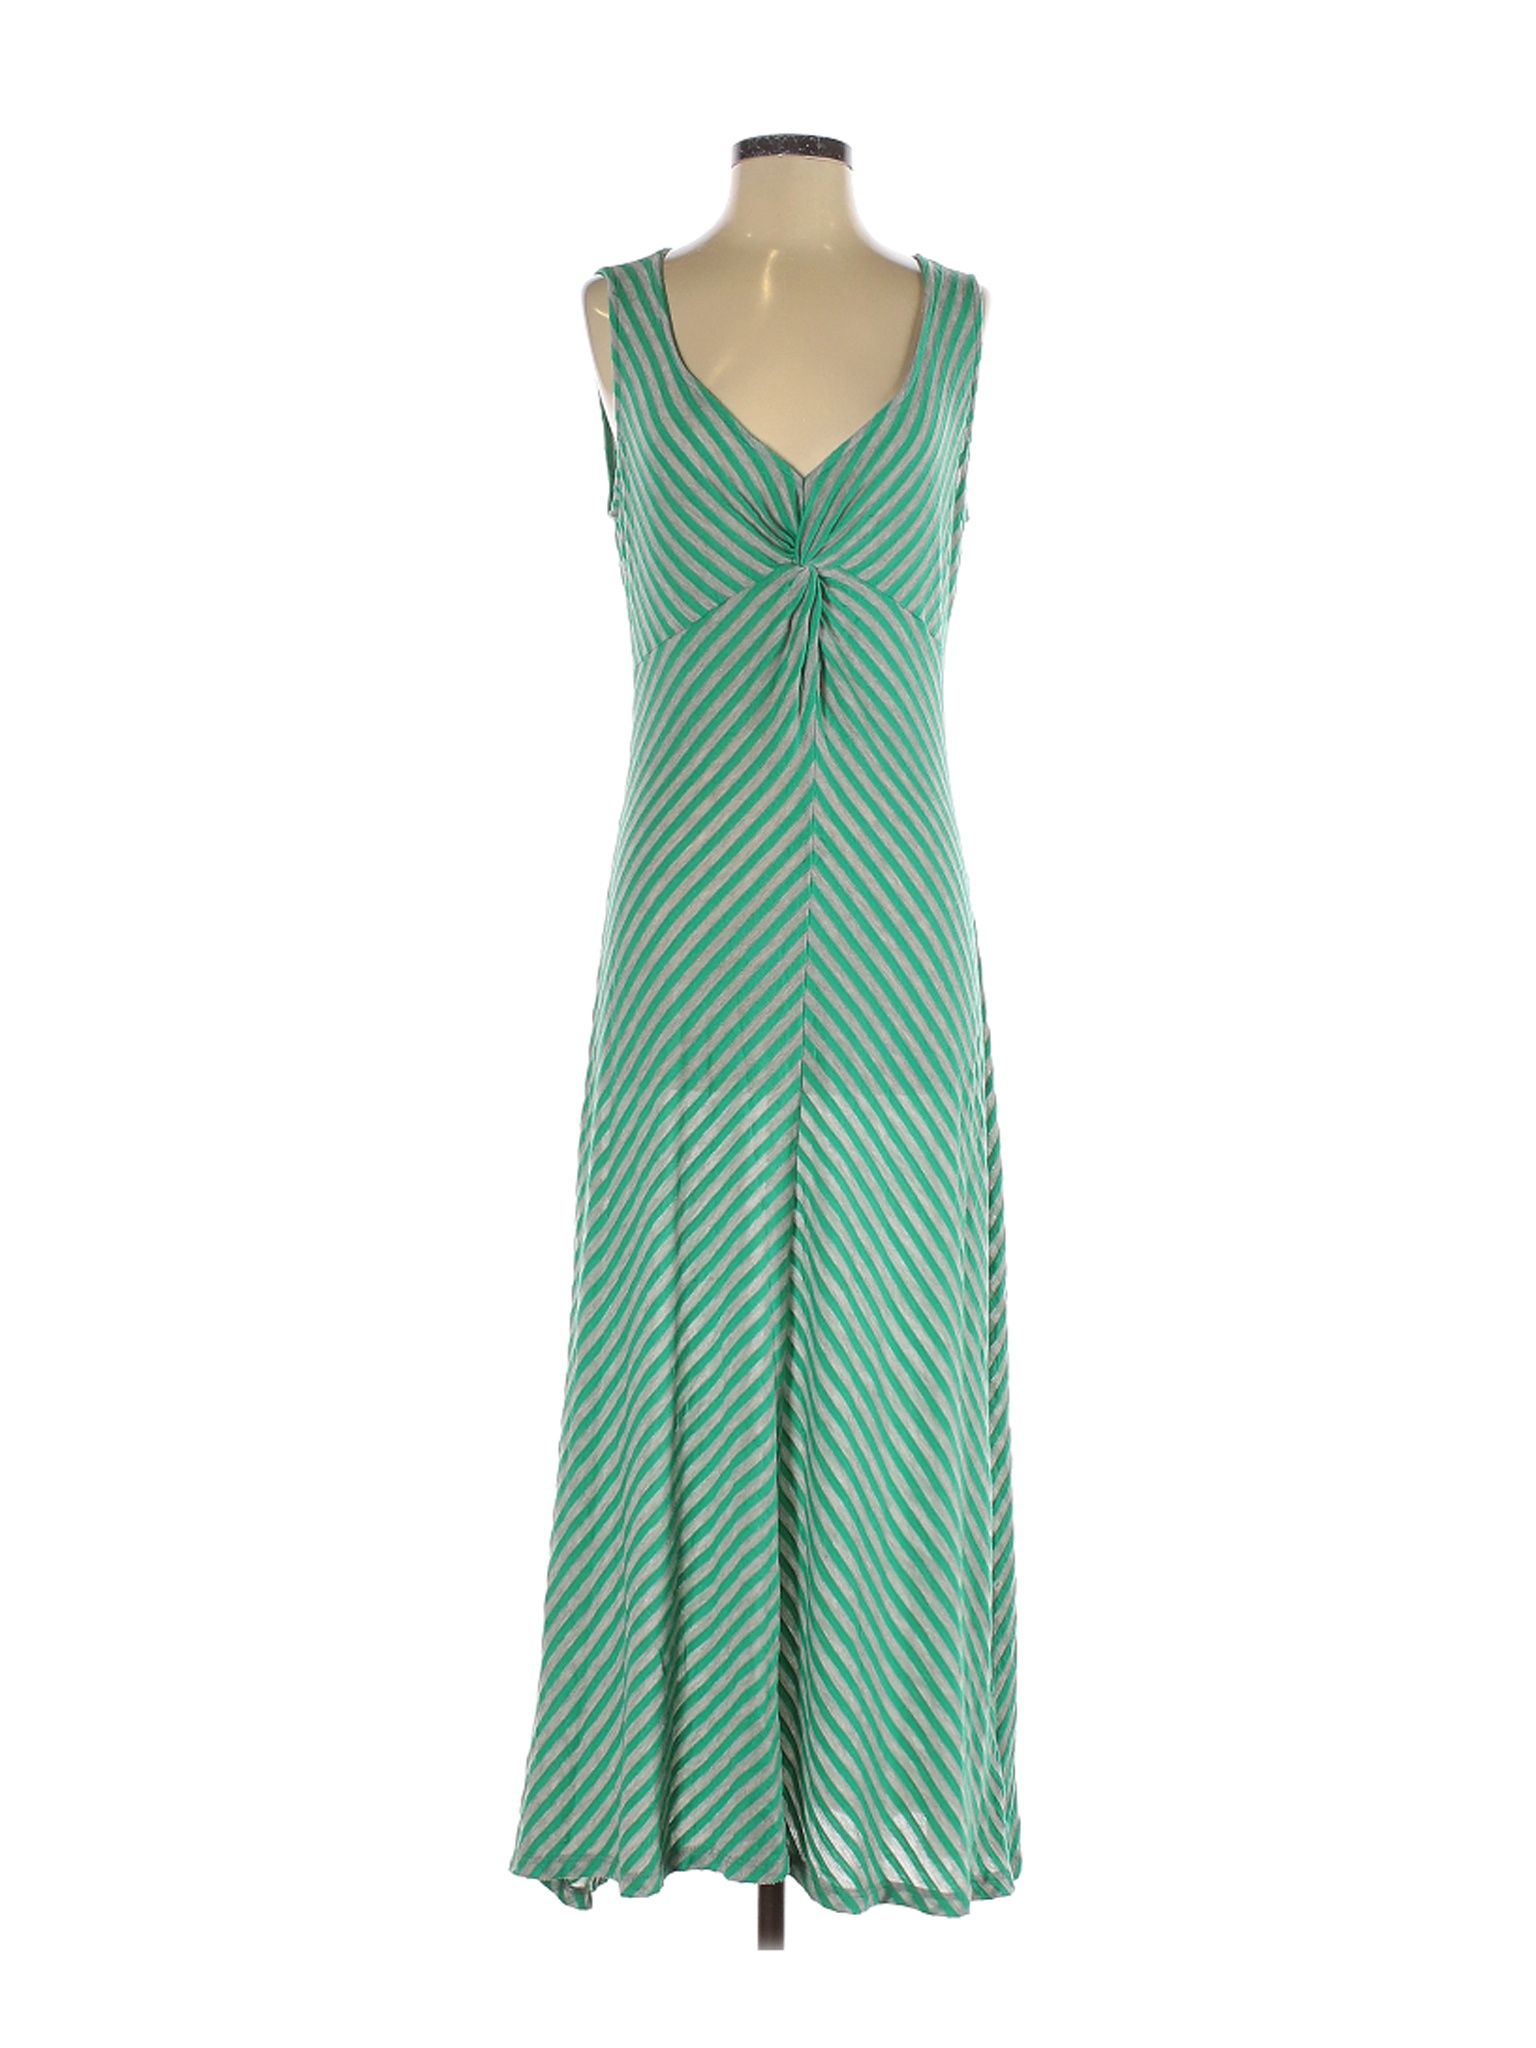 Ellen Tracy Women Green Casual Dress M | eBay